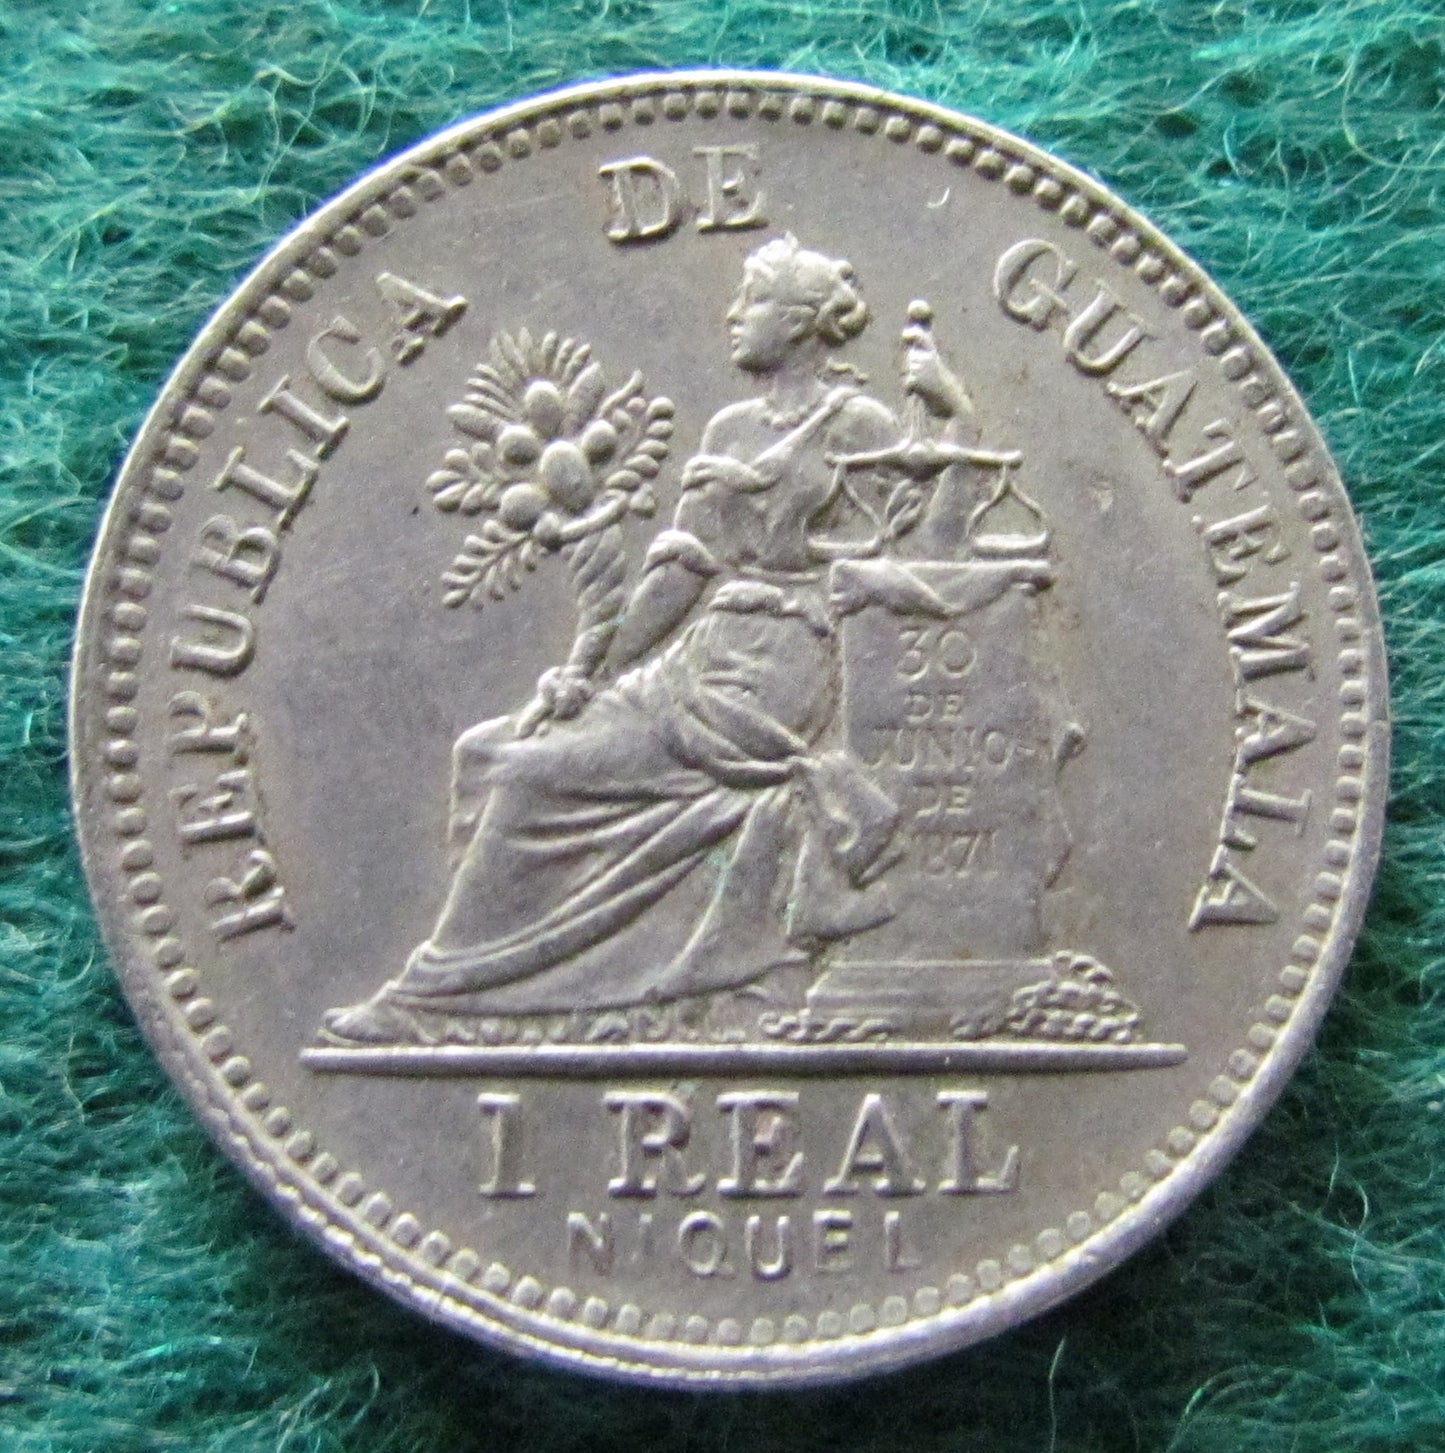 Guatemala 1901 1 Real Coin - Circulated